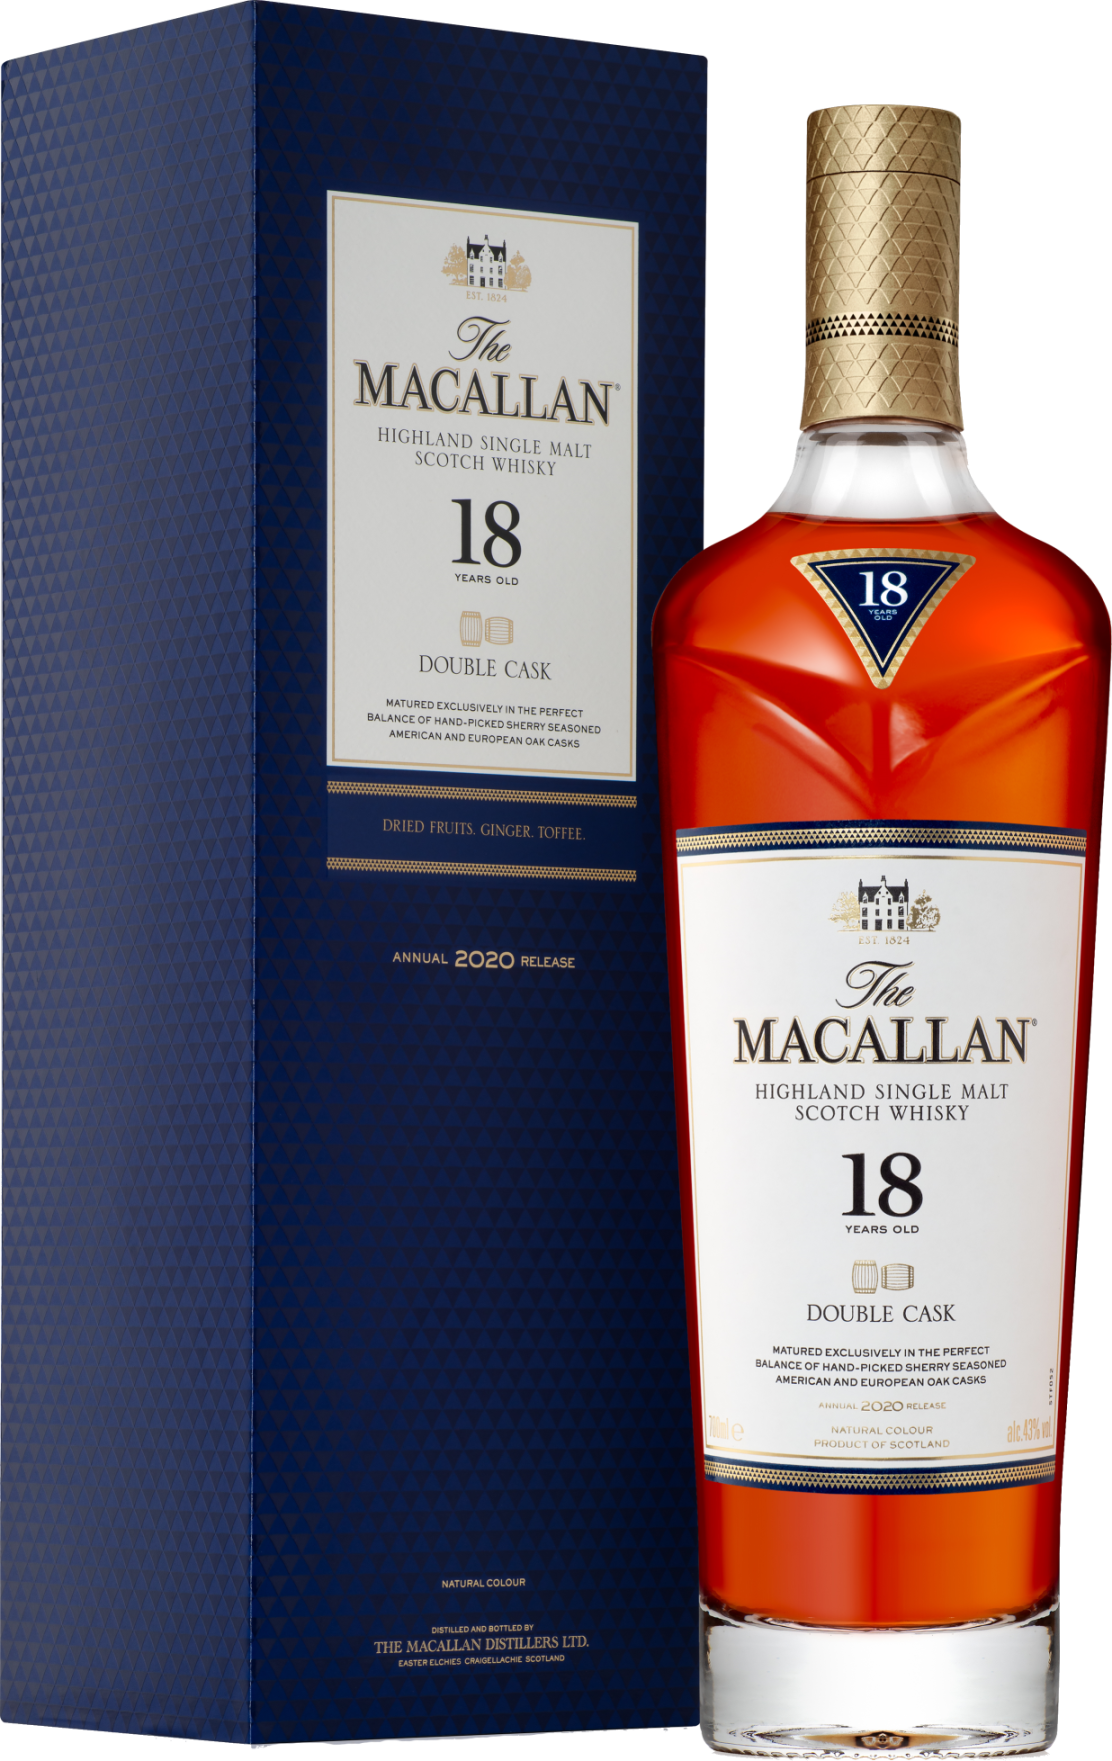 https://www.bottlesandcases.com/images/sites/bottlesandcases/labels/macallan-18-yr-double-cask-highland-single-malt-scotch-whisky_1.jpg